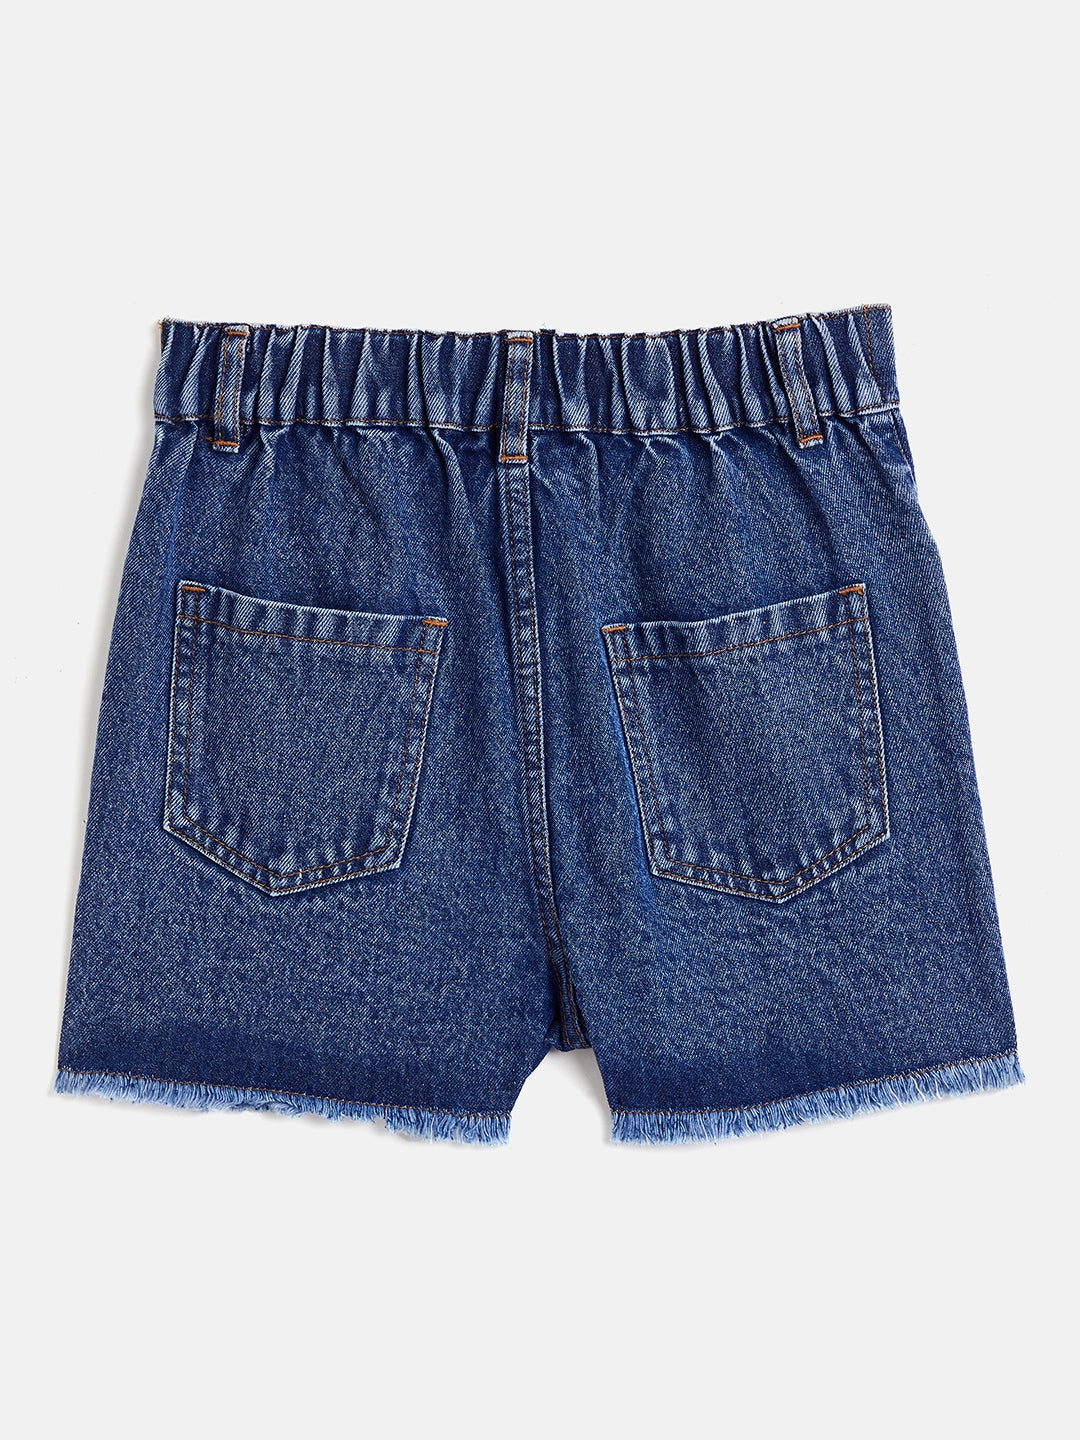 Girls' Shorts | Girls' Denim Shorts & Skorts | Boden US